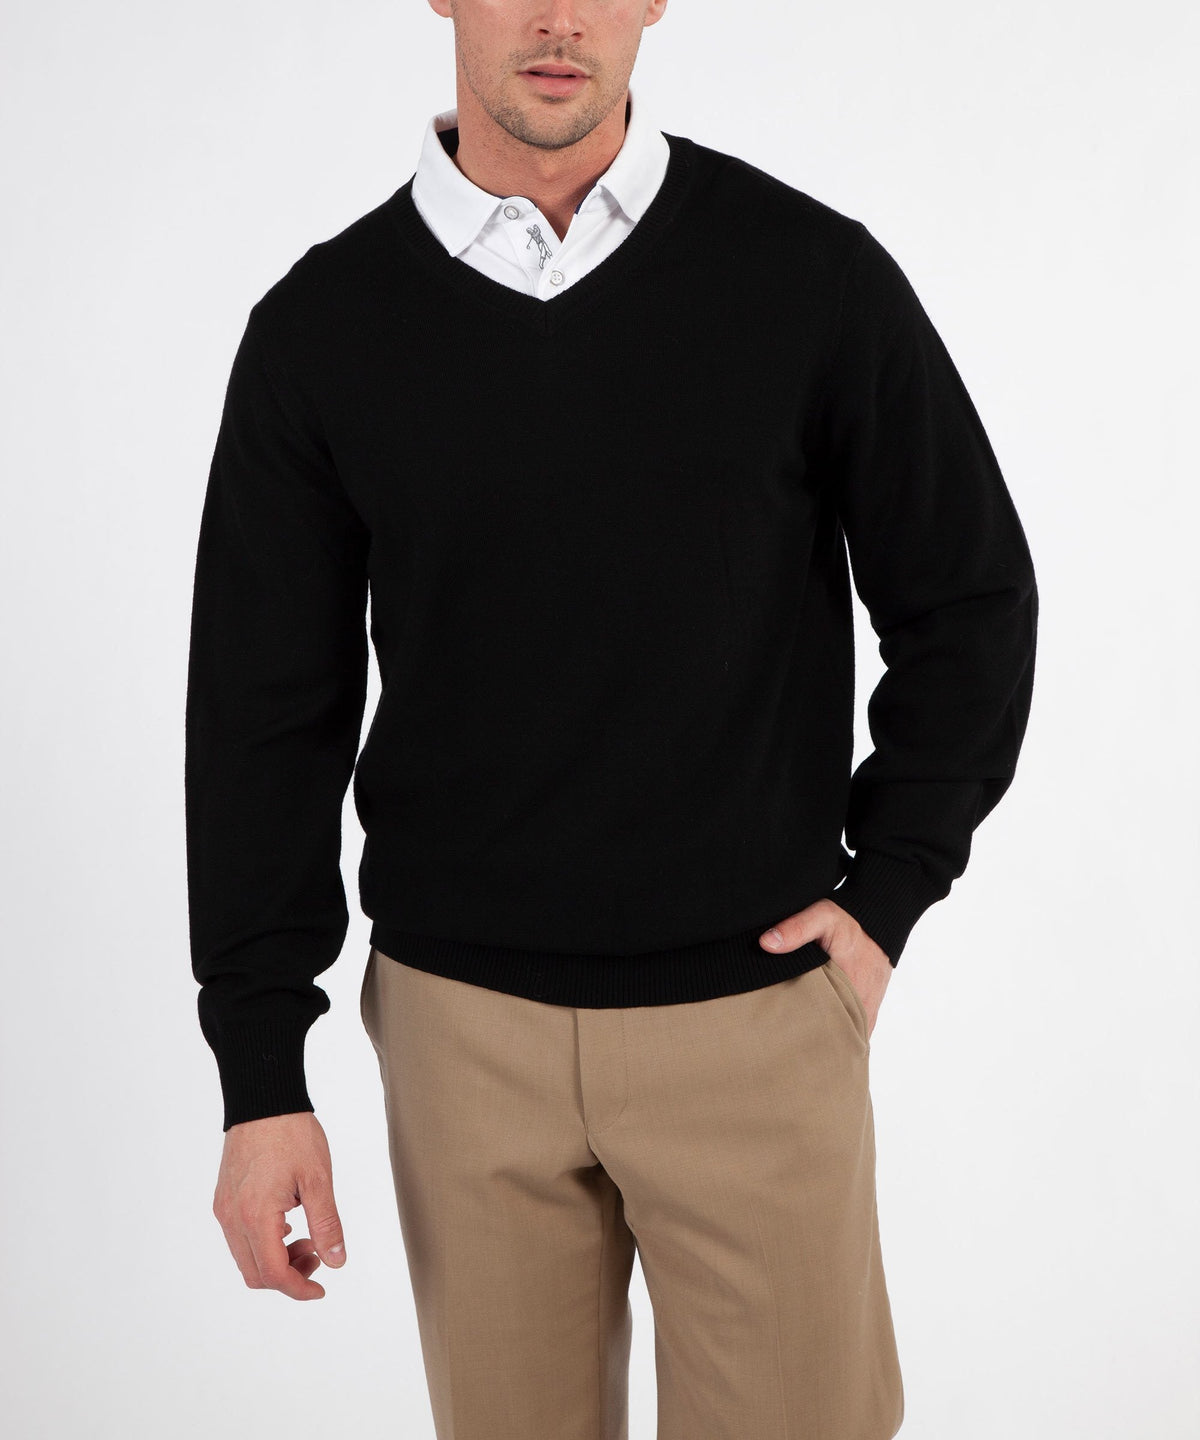 Signature 100% Merino Wool V-Neck Sweater - Bobby Jones